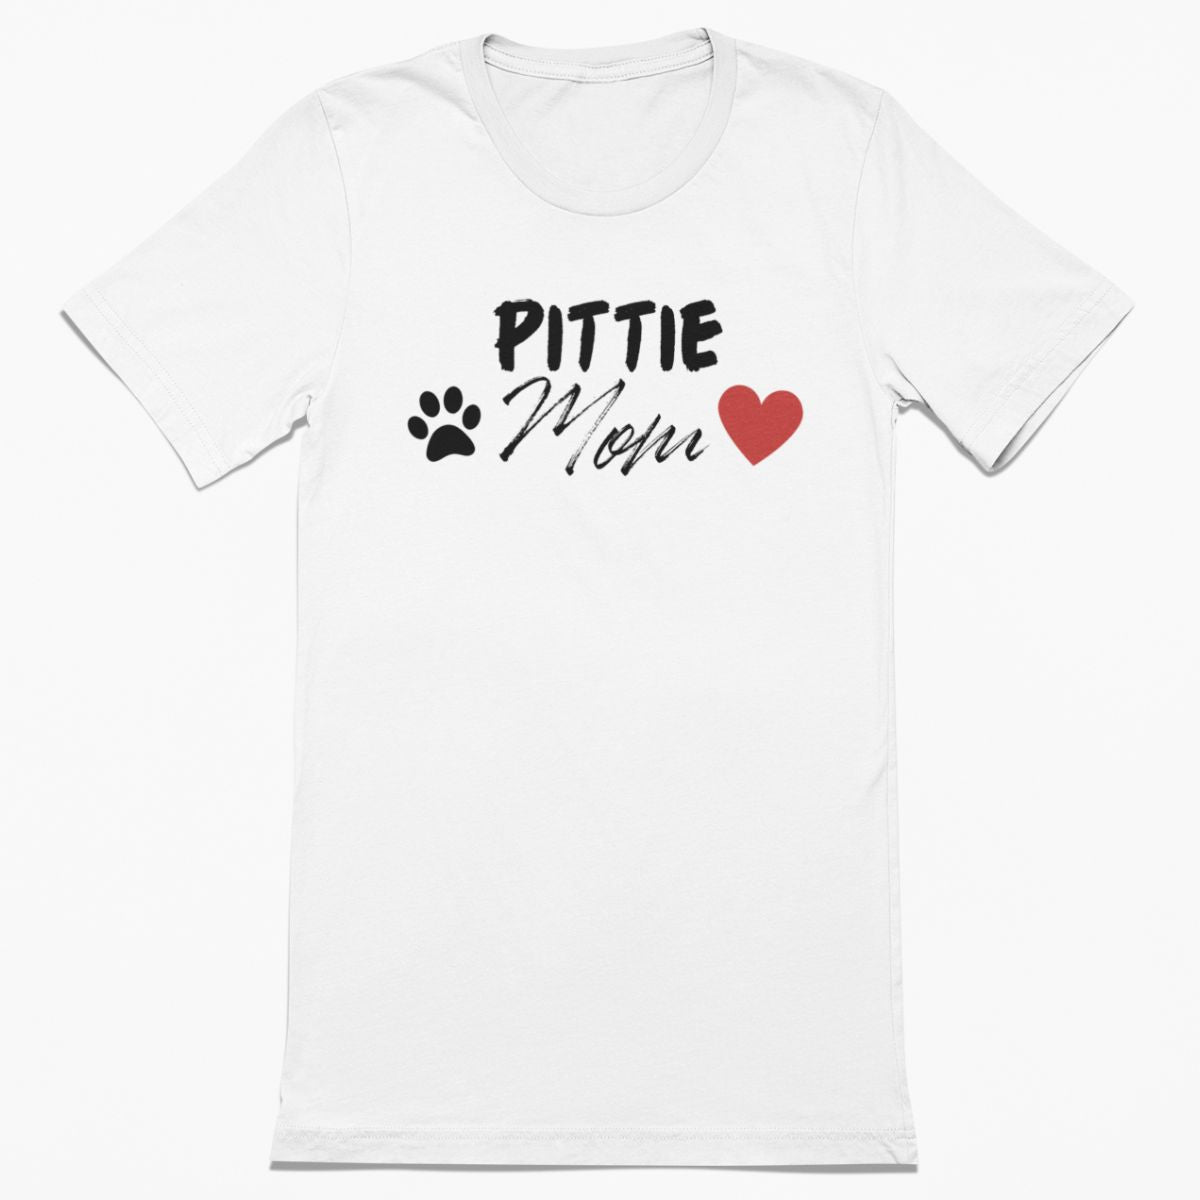 Pittie Mom Shirt